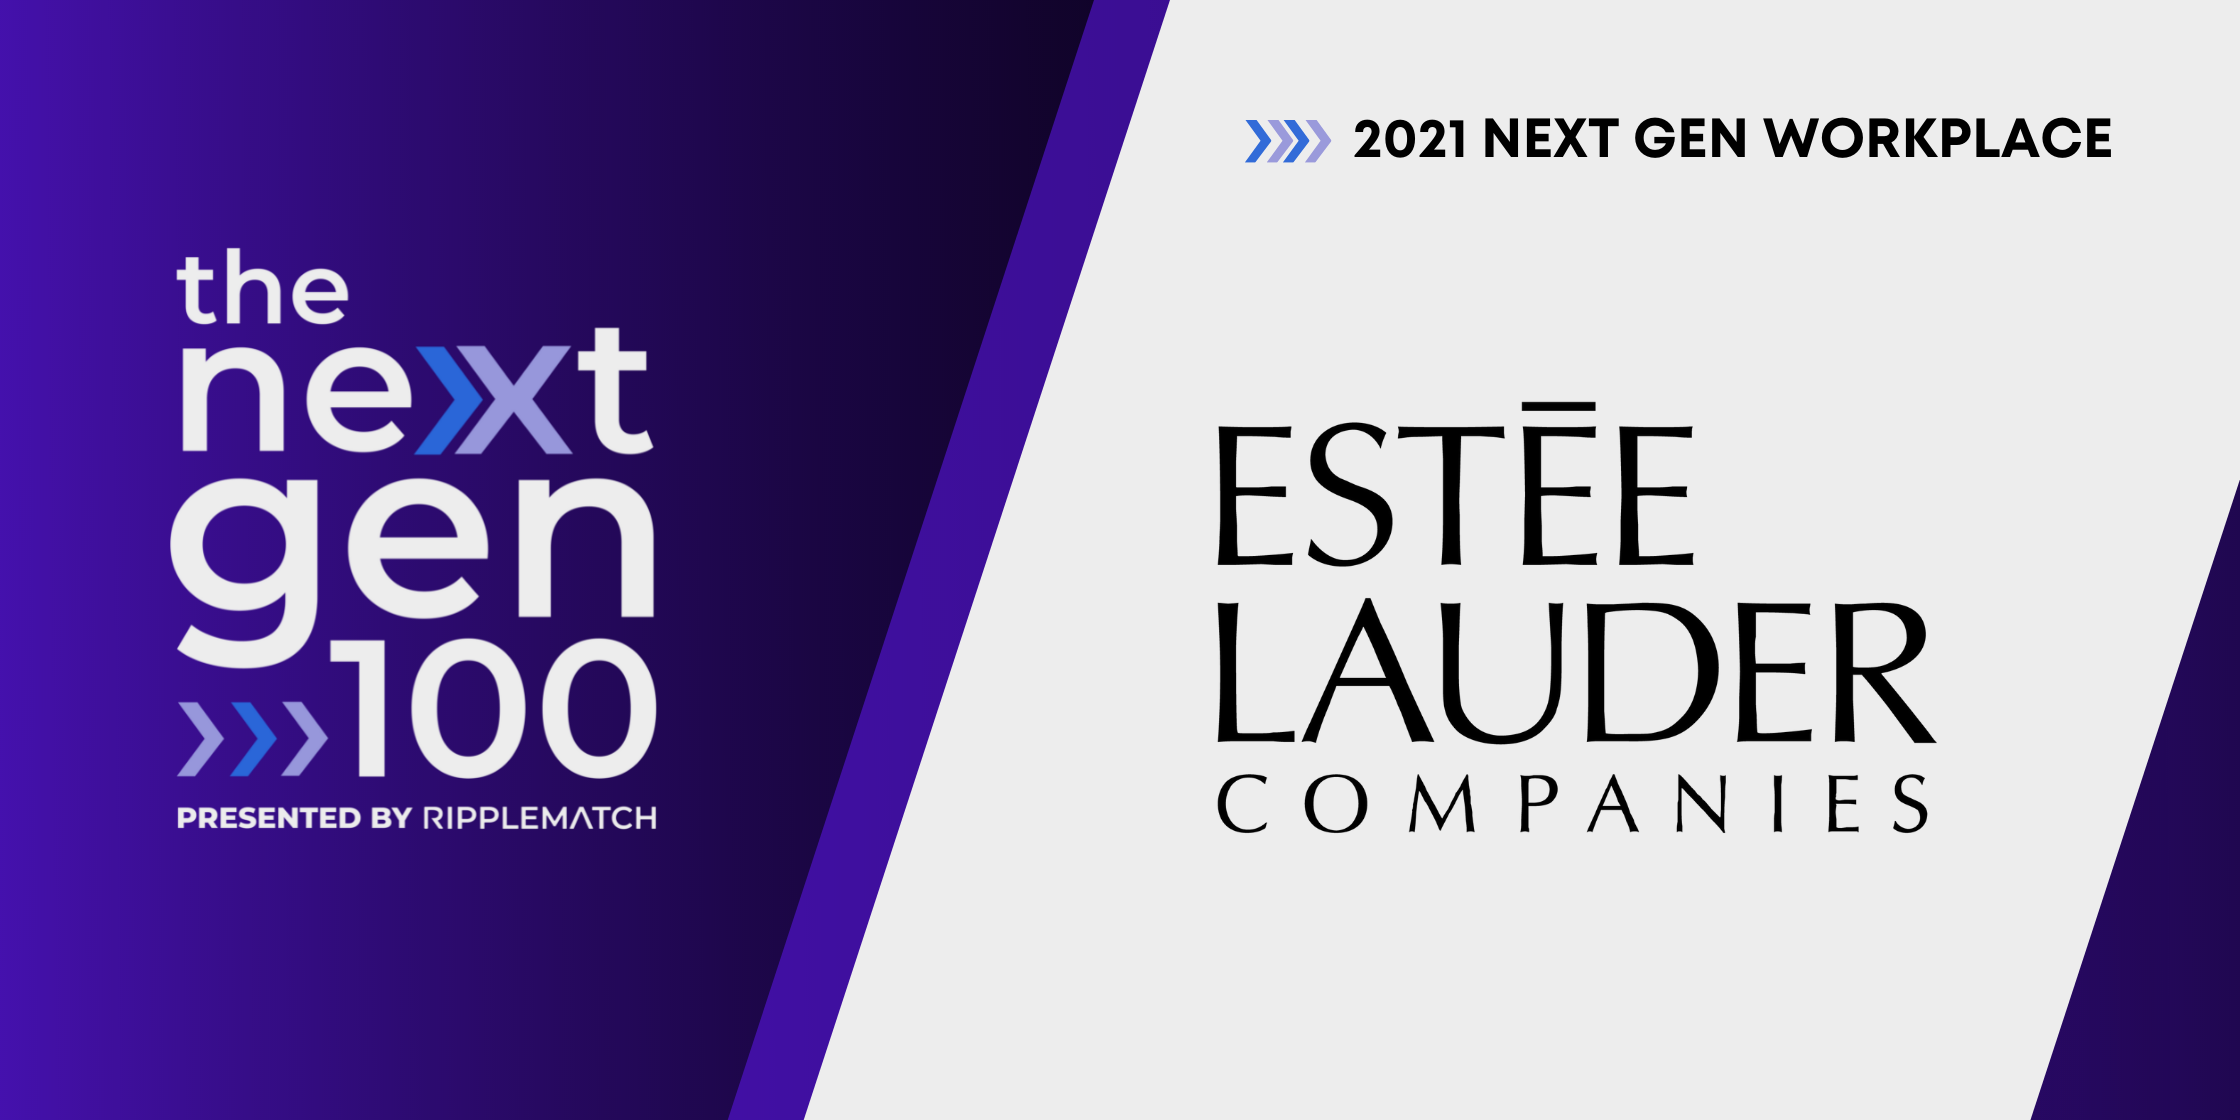 The Estée Lauder Companies is a Top 100 Next Gen Workplace